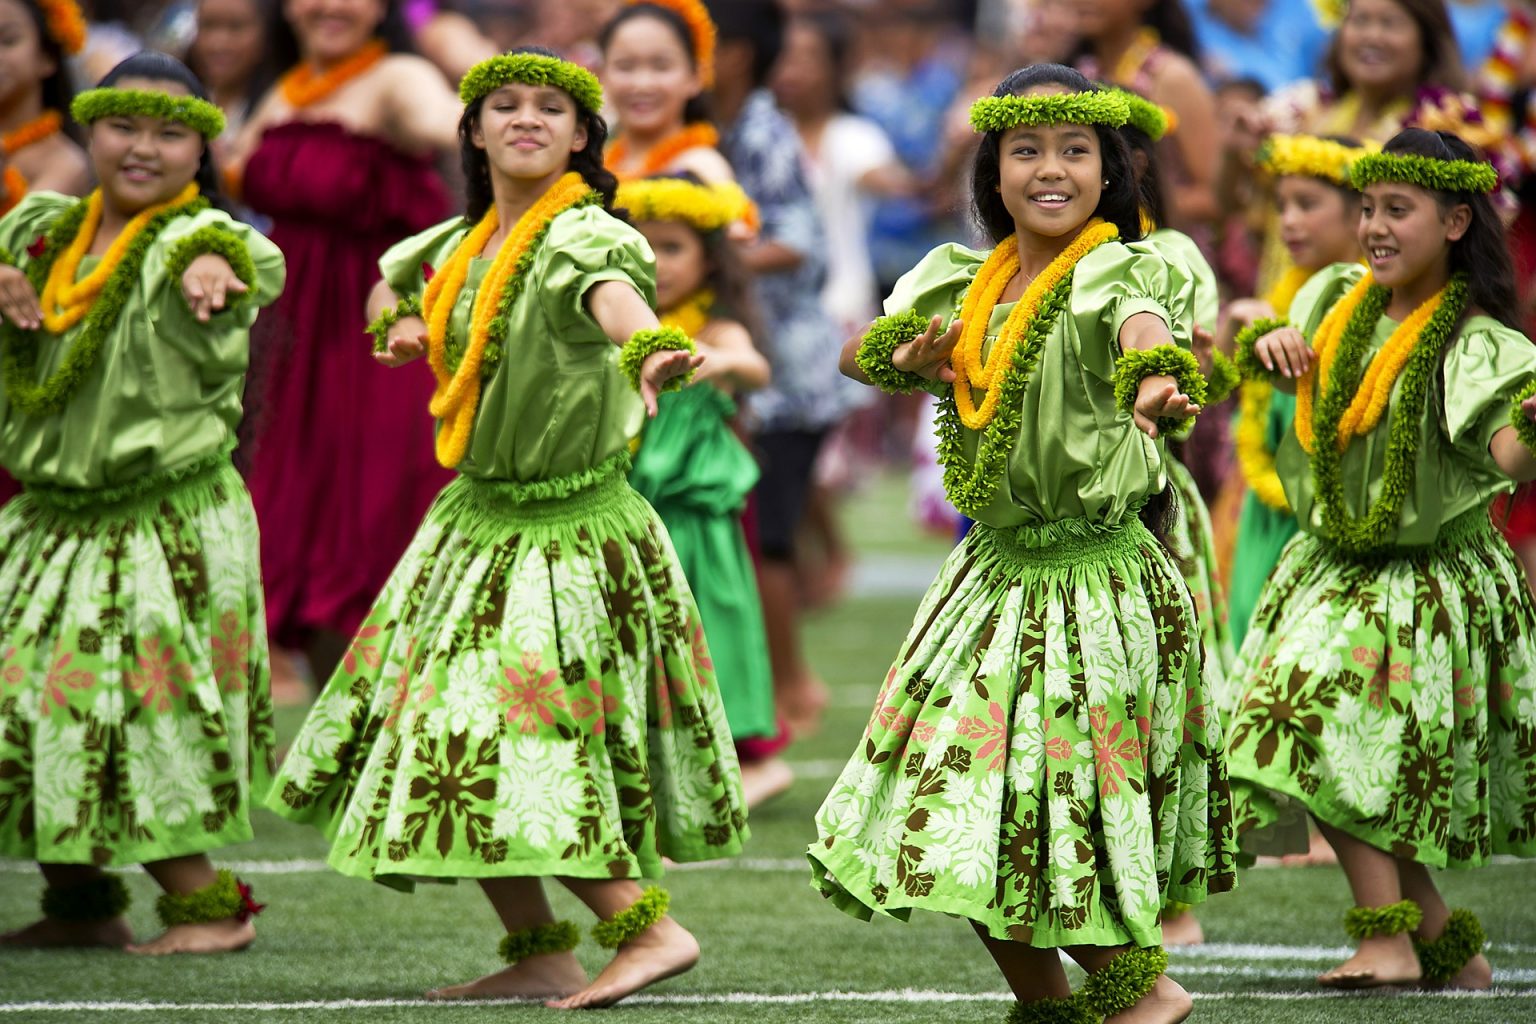 hawaiian-hula-dancers-377653_1920-1536x1024.jpg